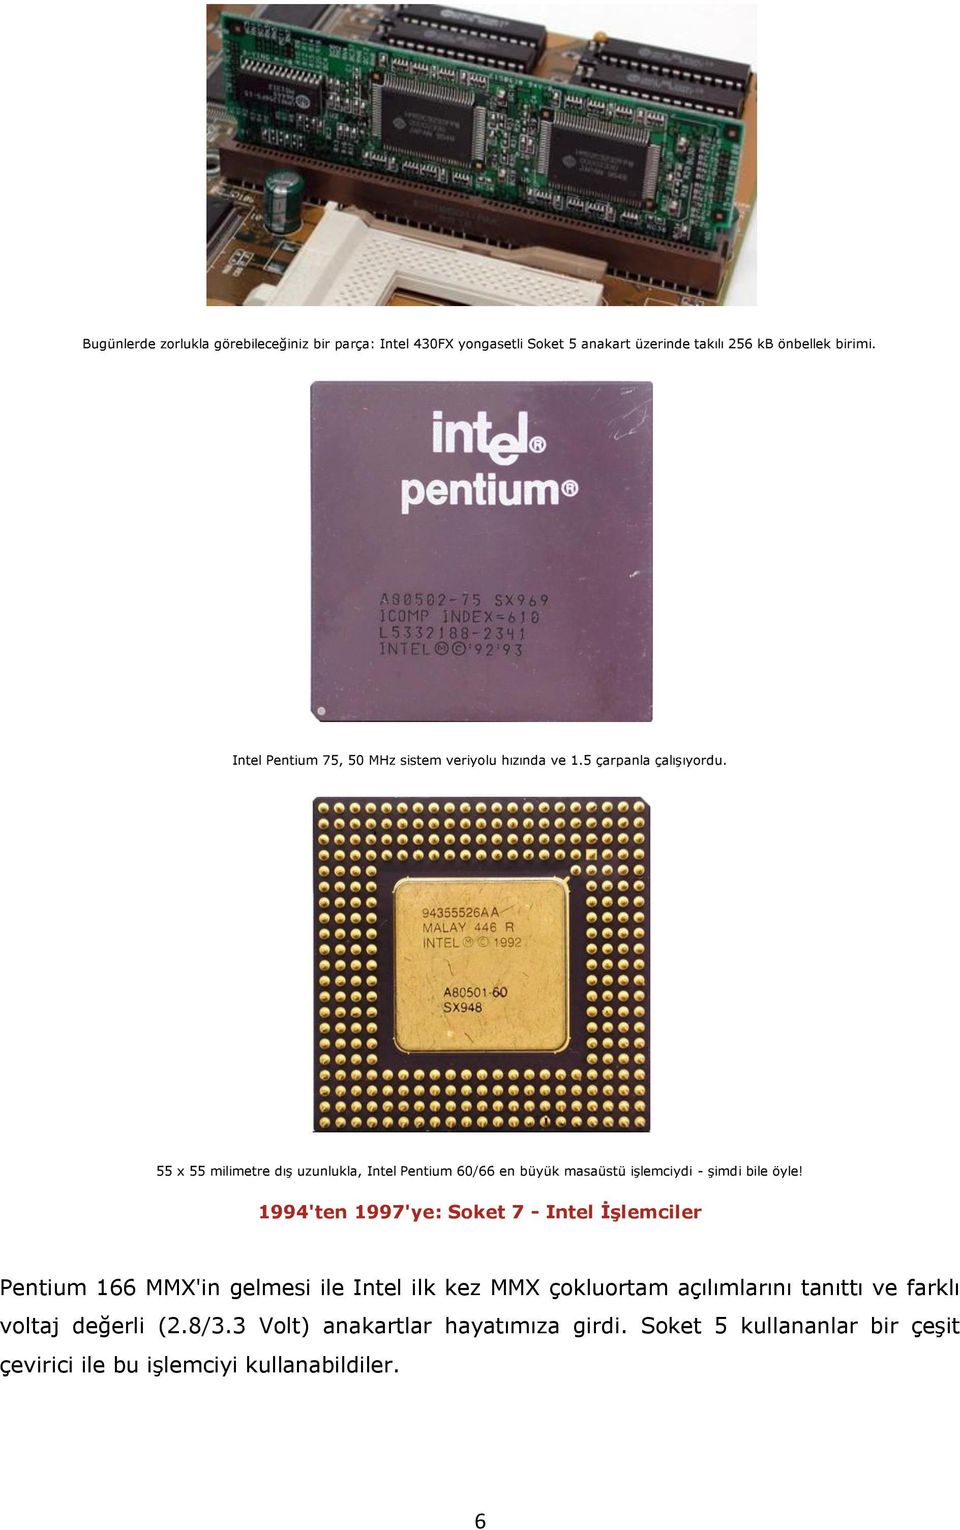 55 x 55 milimetre dış uzunlukla, Intel Pentium 60/66 en büyük masaüstü işlemciydi - şimdi bile öyle!